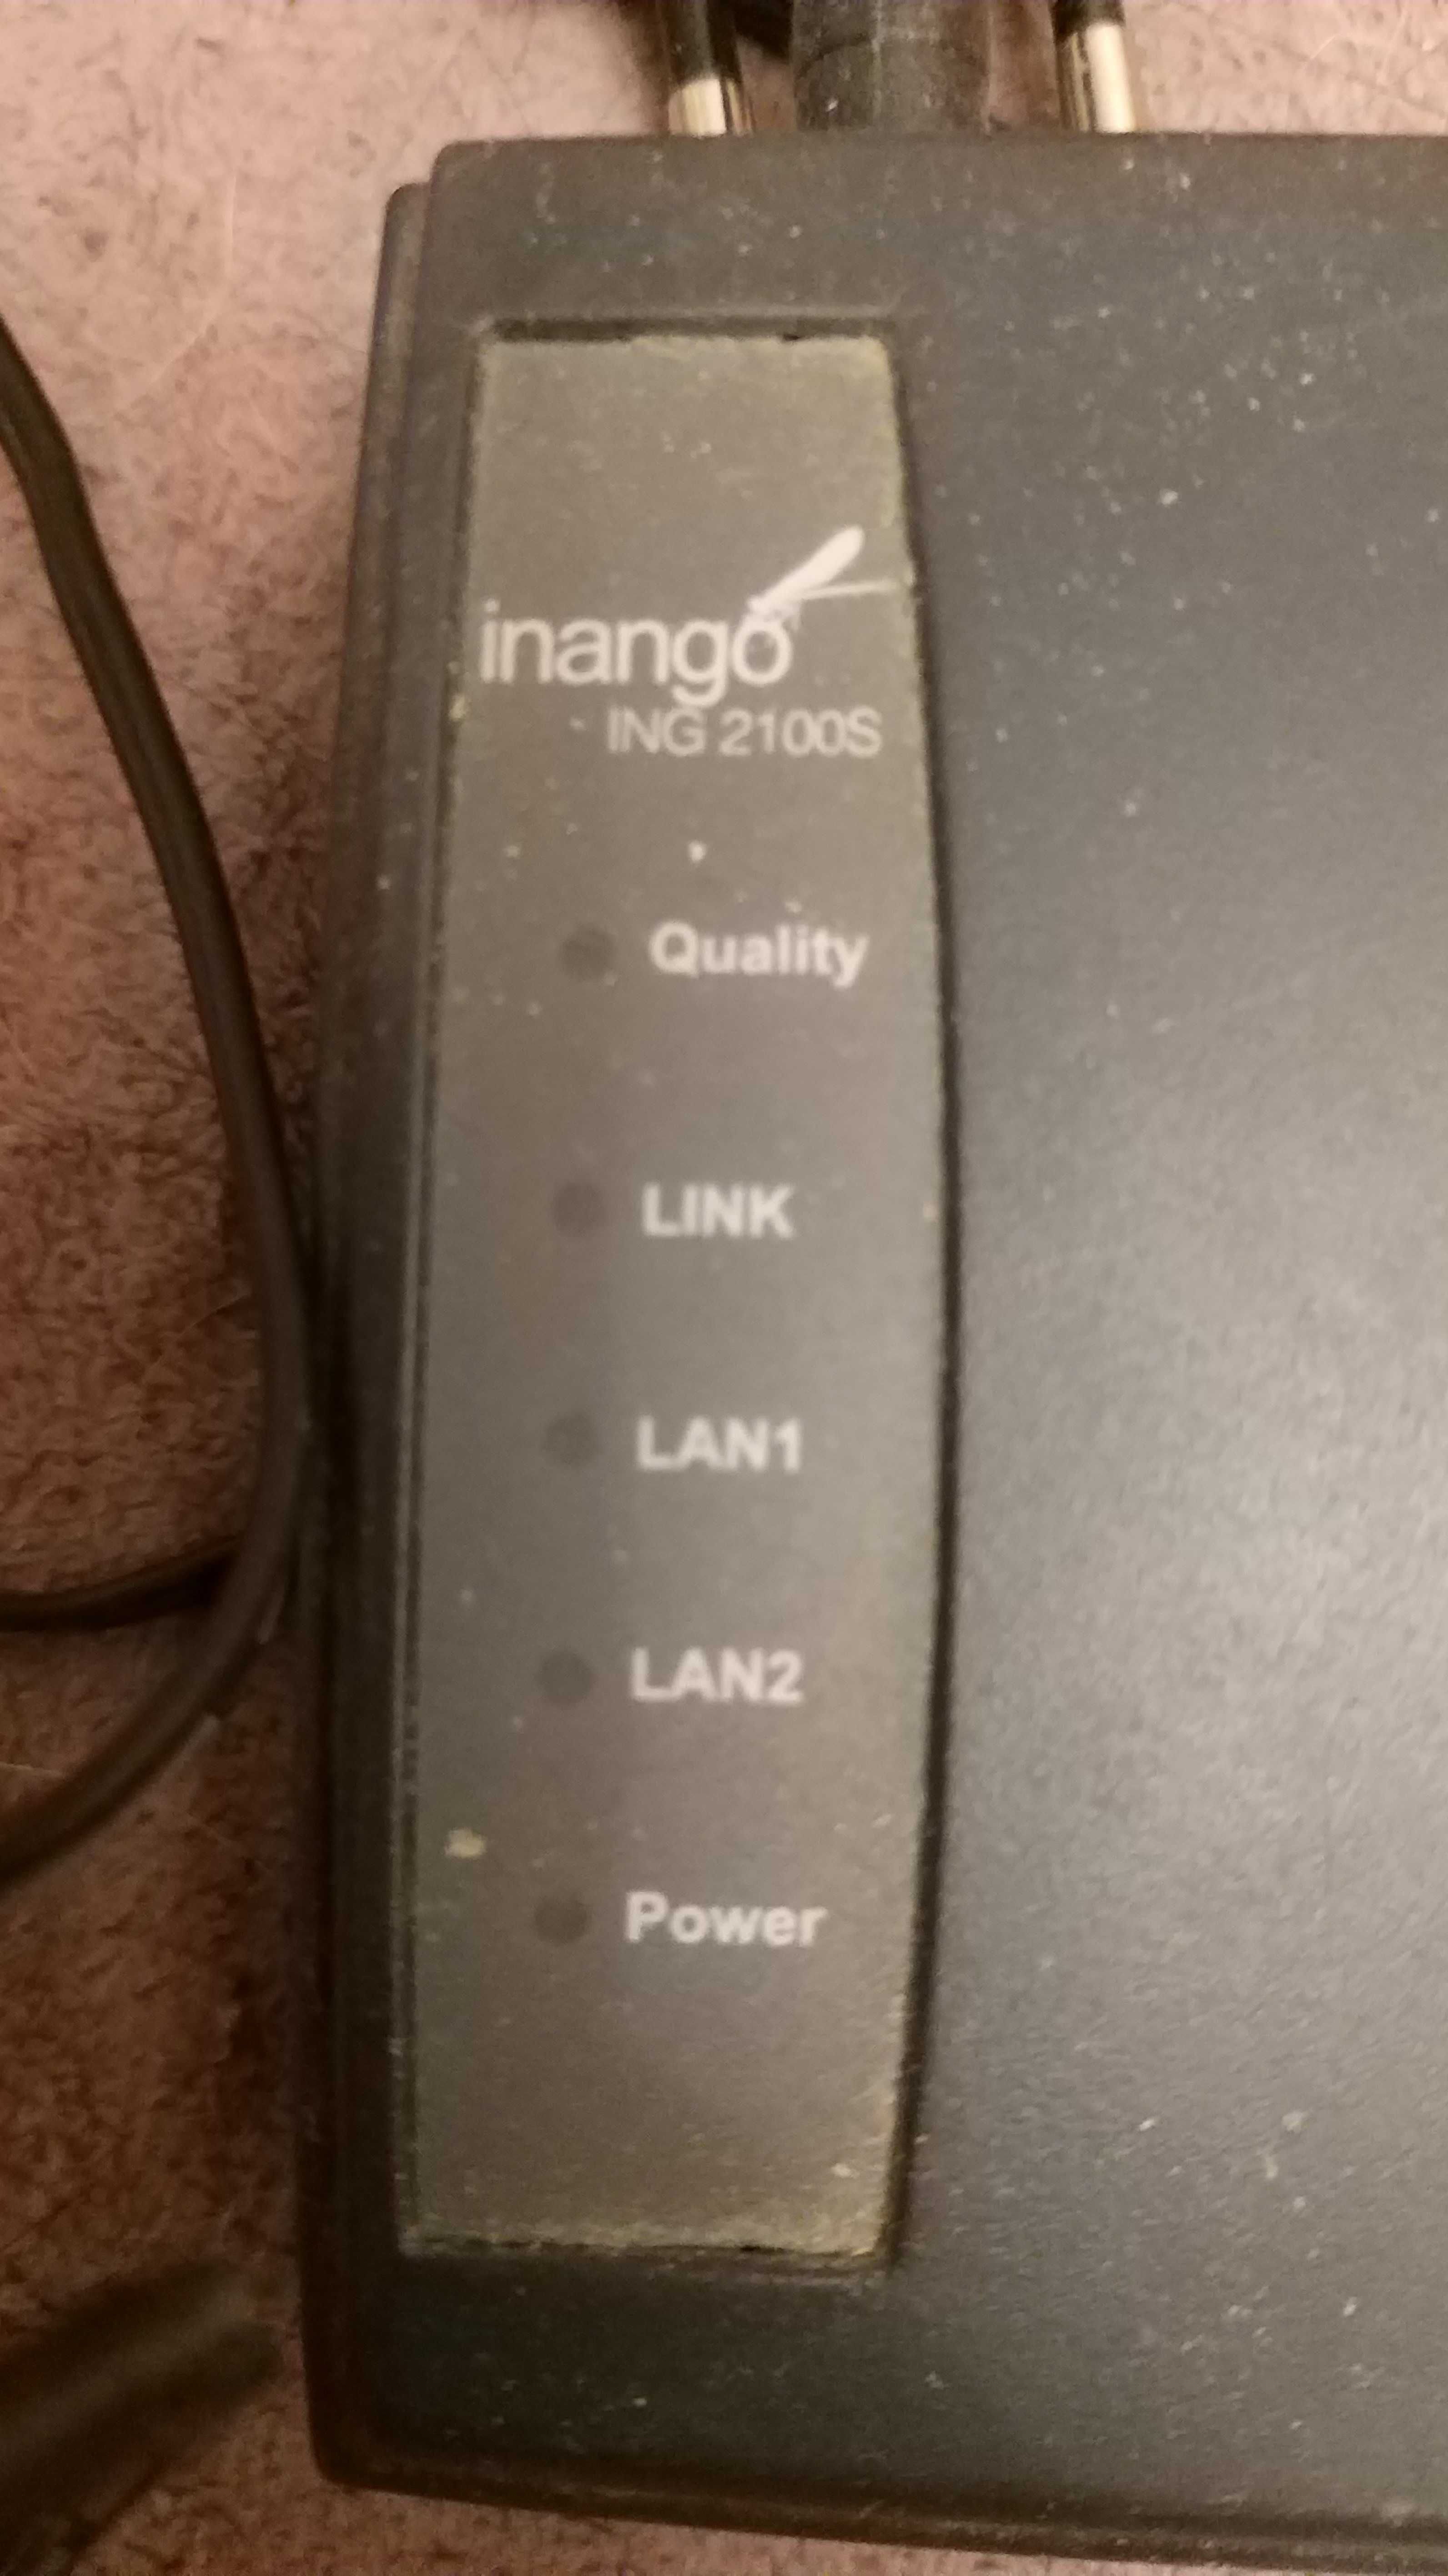 Продам кабельный модем Inango ing 2100s